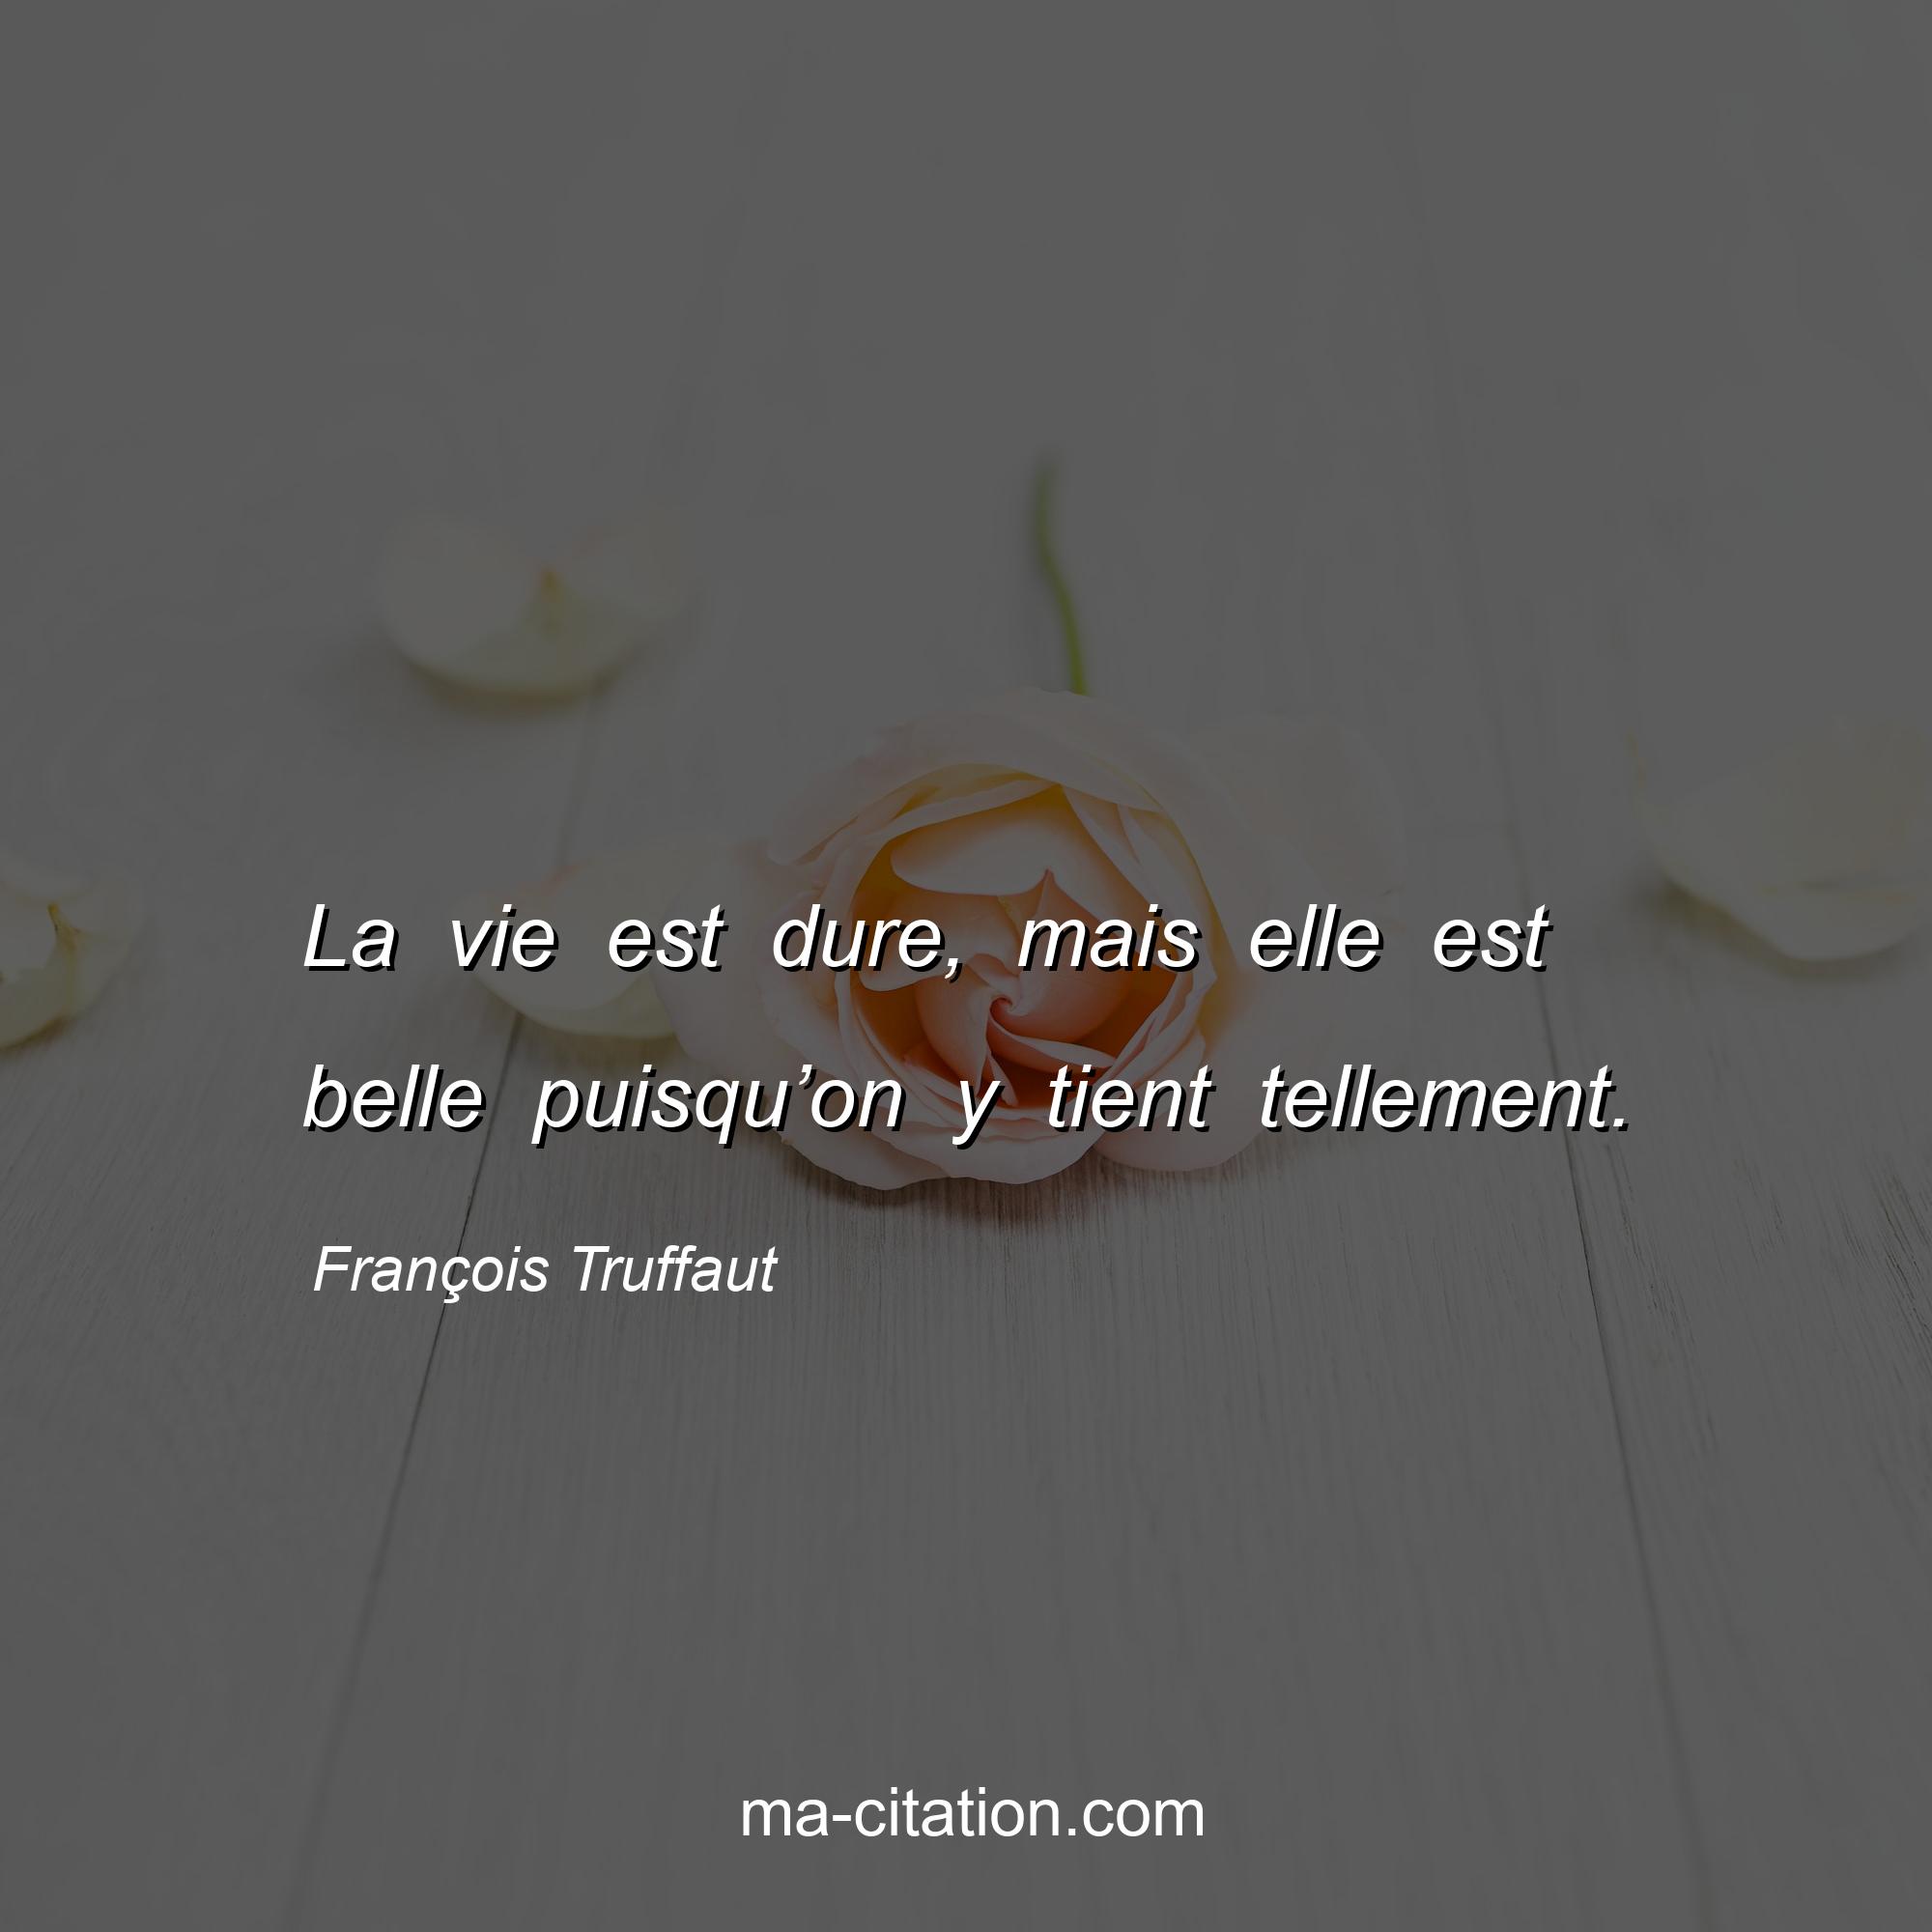 François Truffaut : La vie est dure, mais elle est belle puisqu’on y tient tellement.